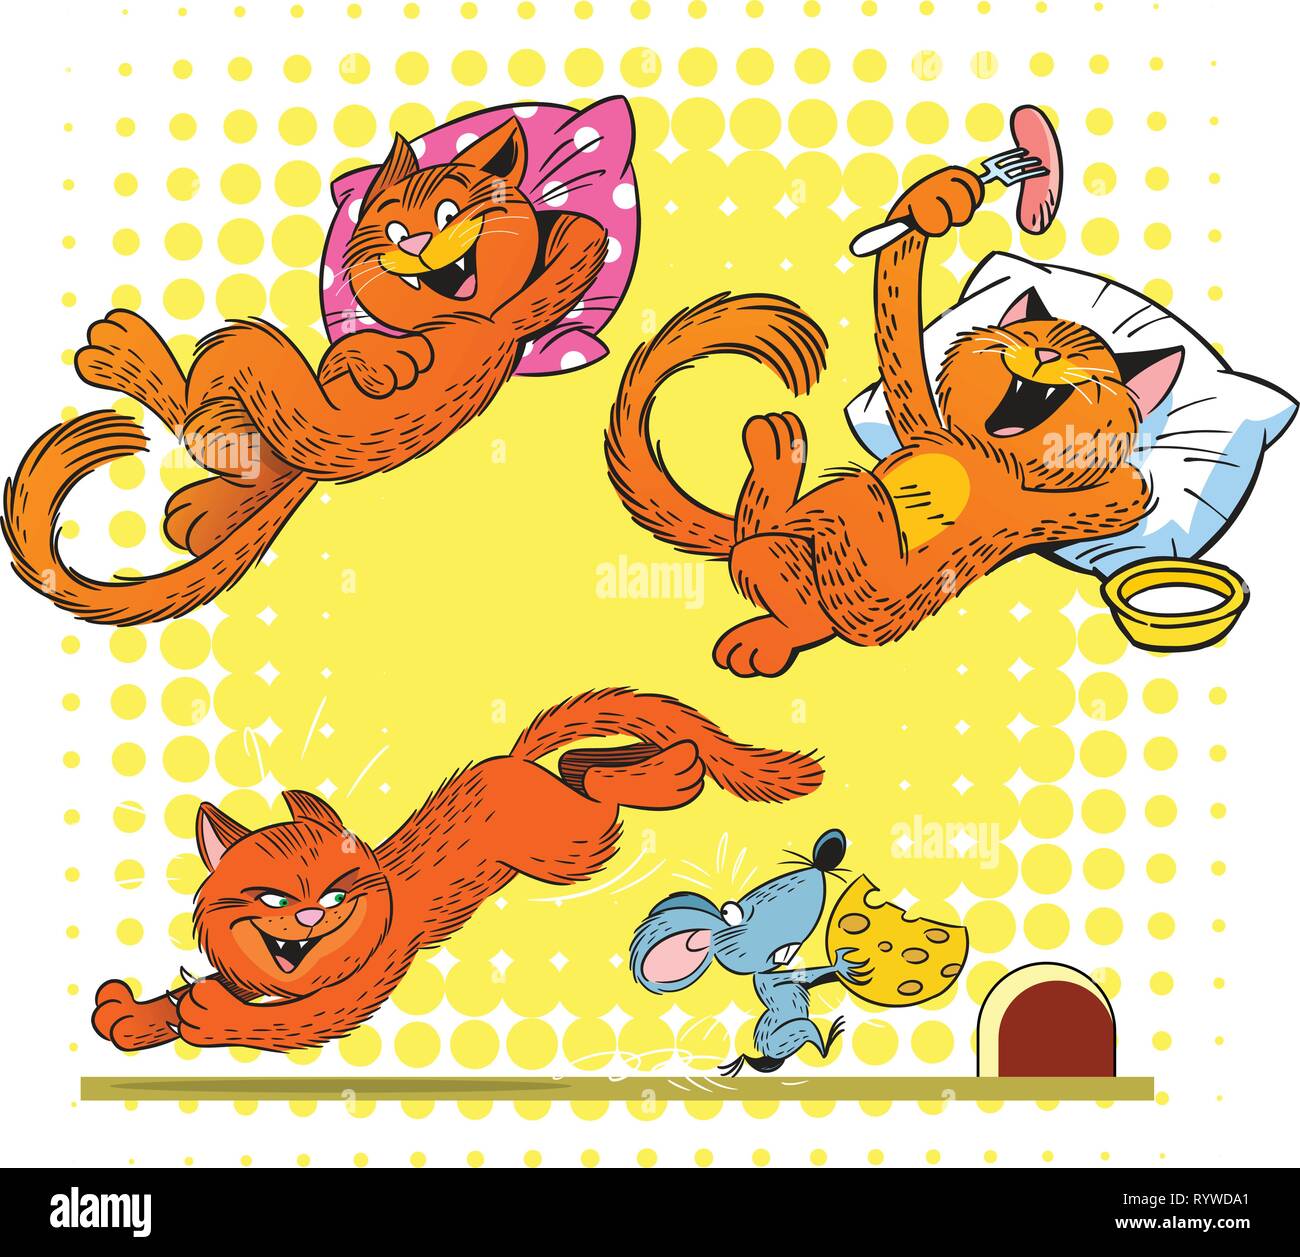 La figura mostra un gatto rosso in varie pose e situazioni. Illustrazione fatto su livelli separati. Illustrazione Vettoriale